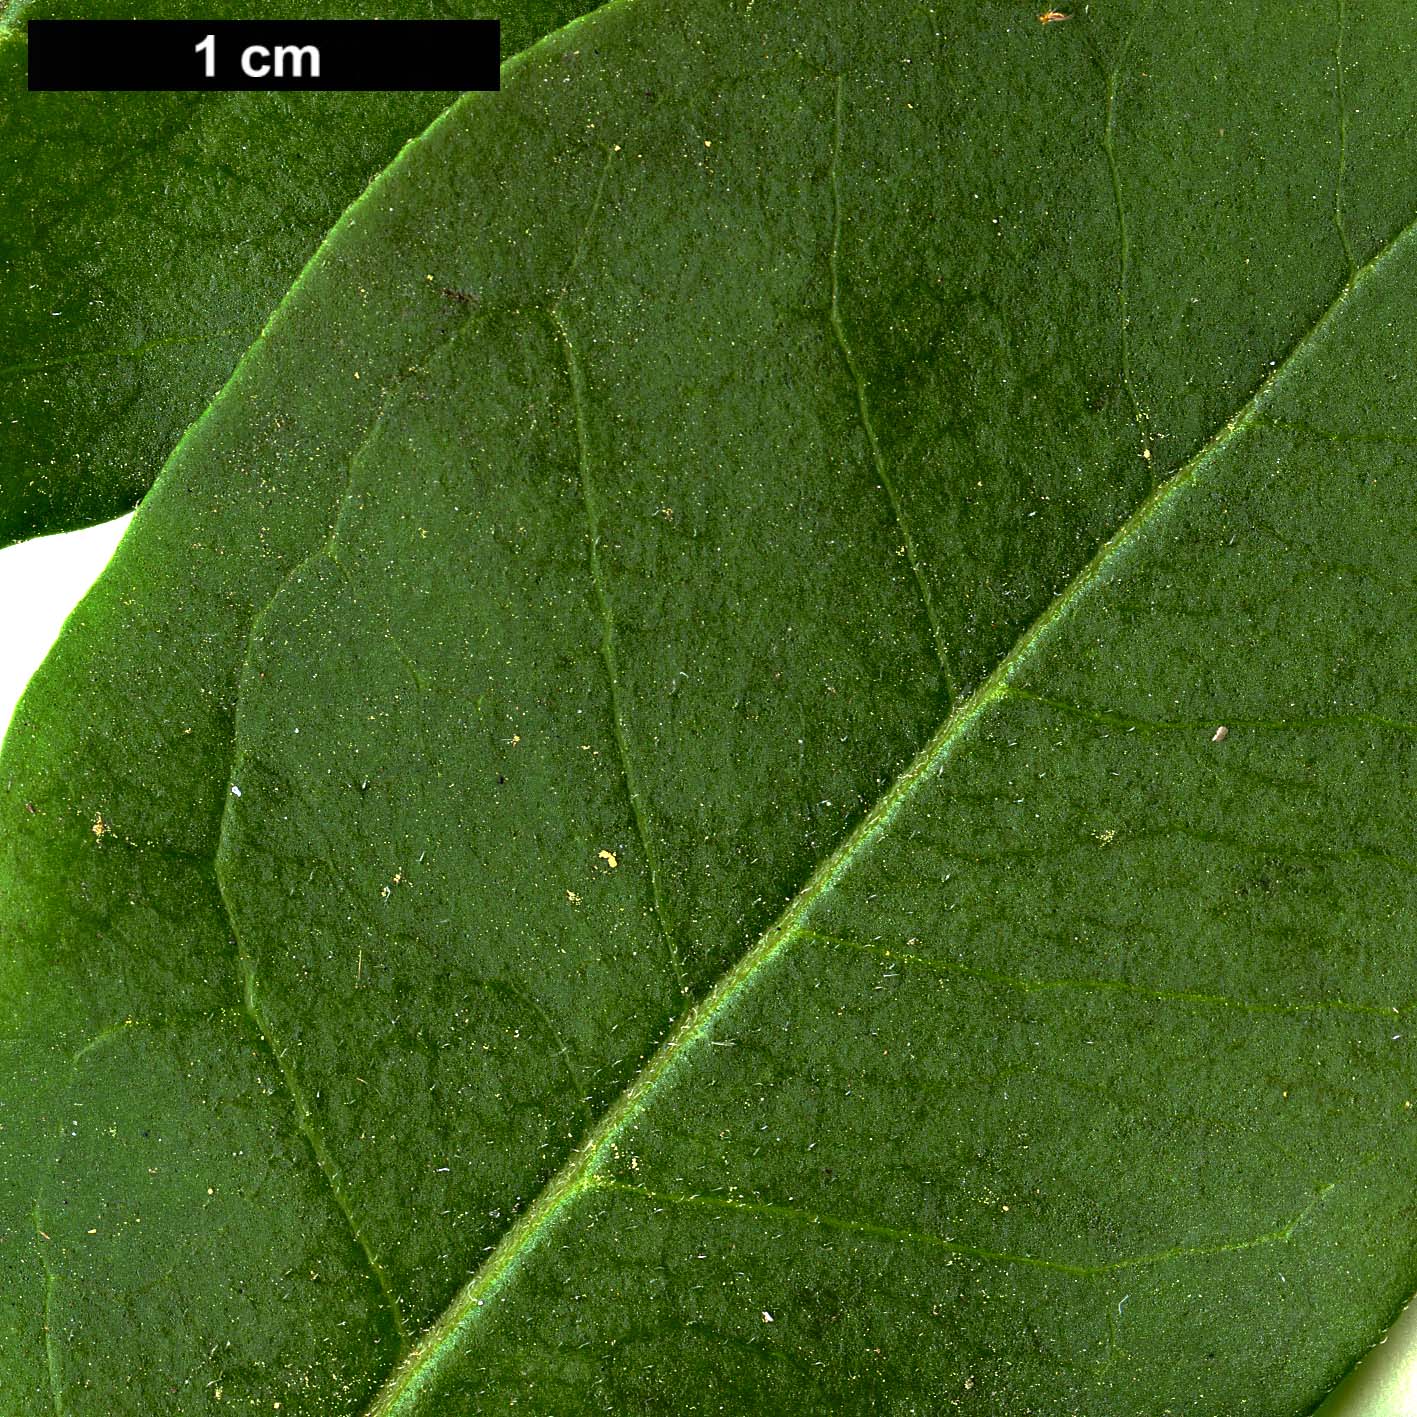 High resolution image: Family: Oleaceae - Genus: Ligustrum - Taxon: ovalifolium